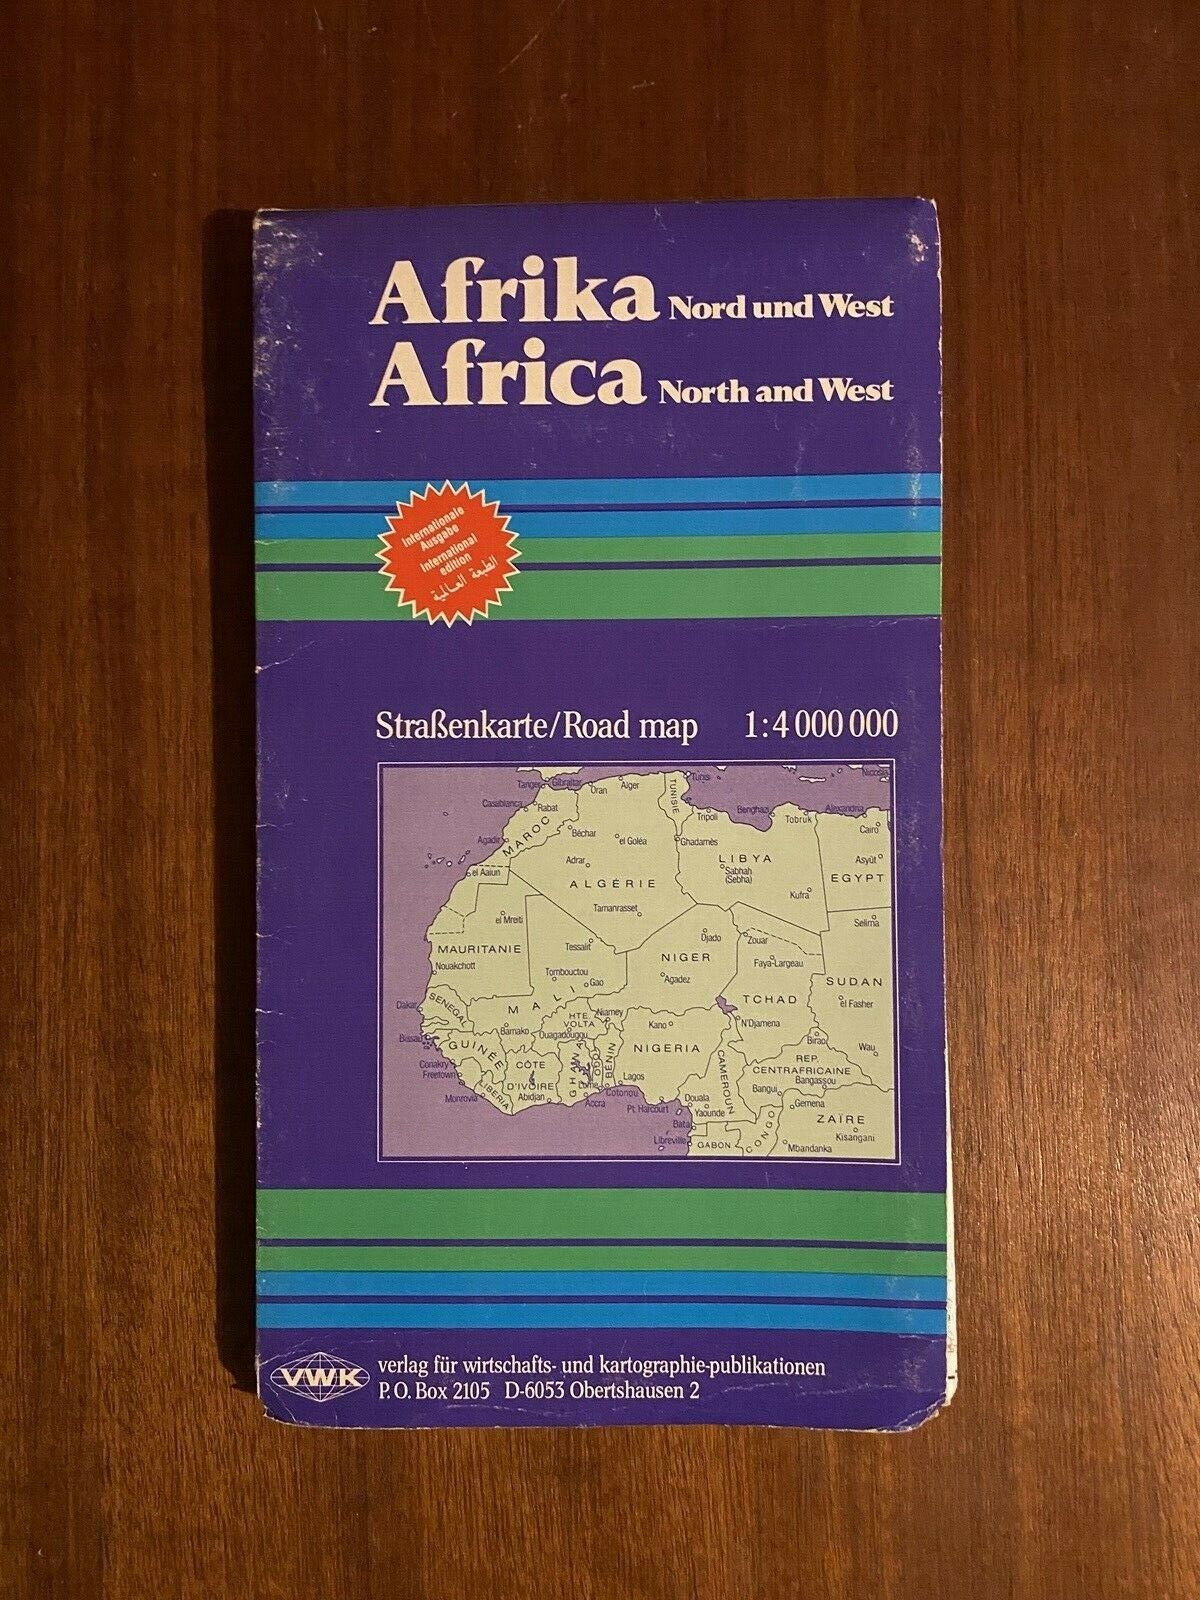 Afrika kort, Africa / Afrique, b: 132 h: 68